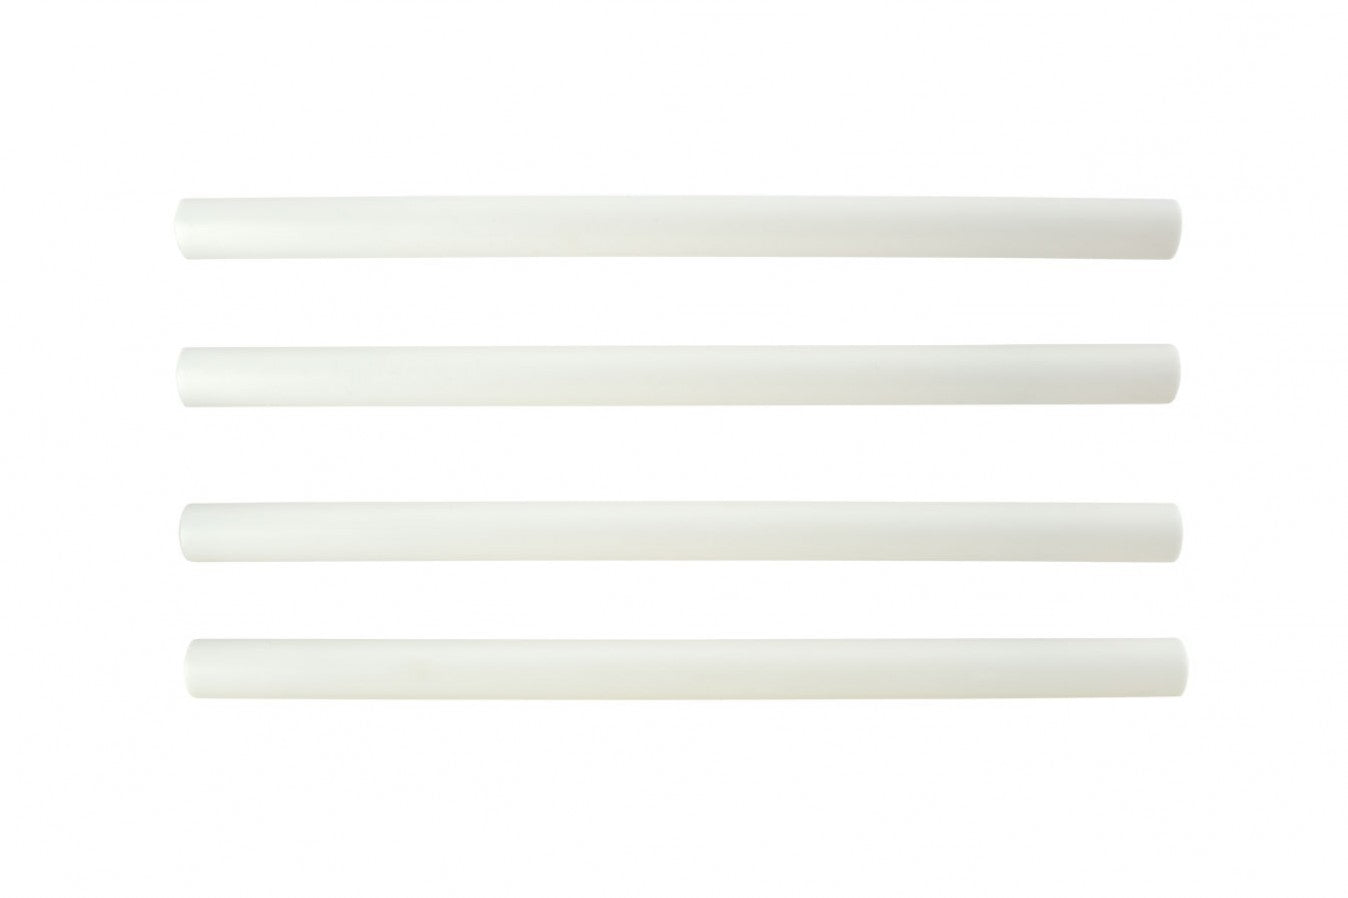 PME Plastic Hollow Pillars Dowel Rods 12.5" - The Cooks Cupboard Ltd